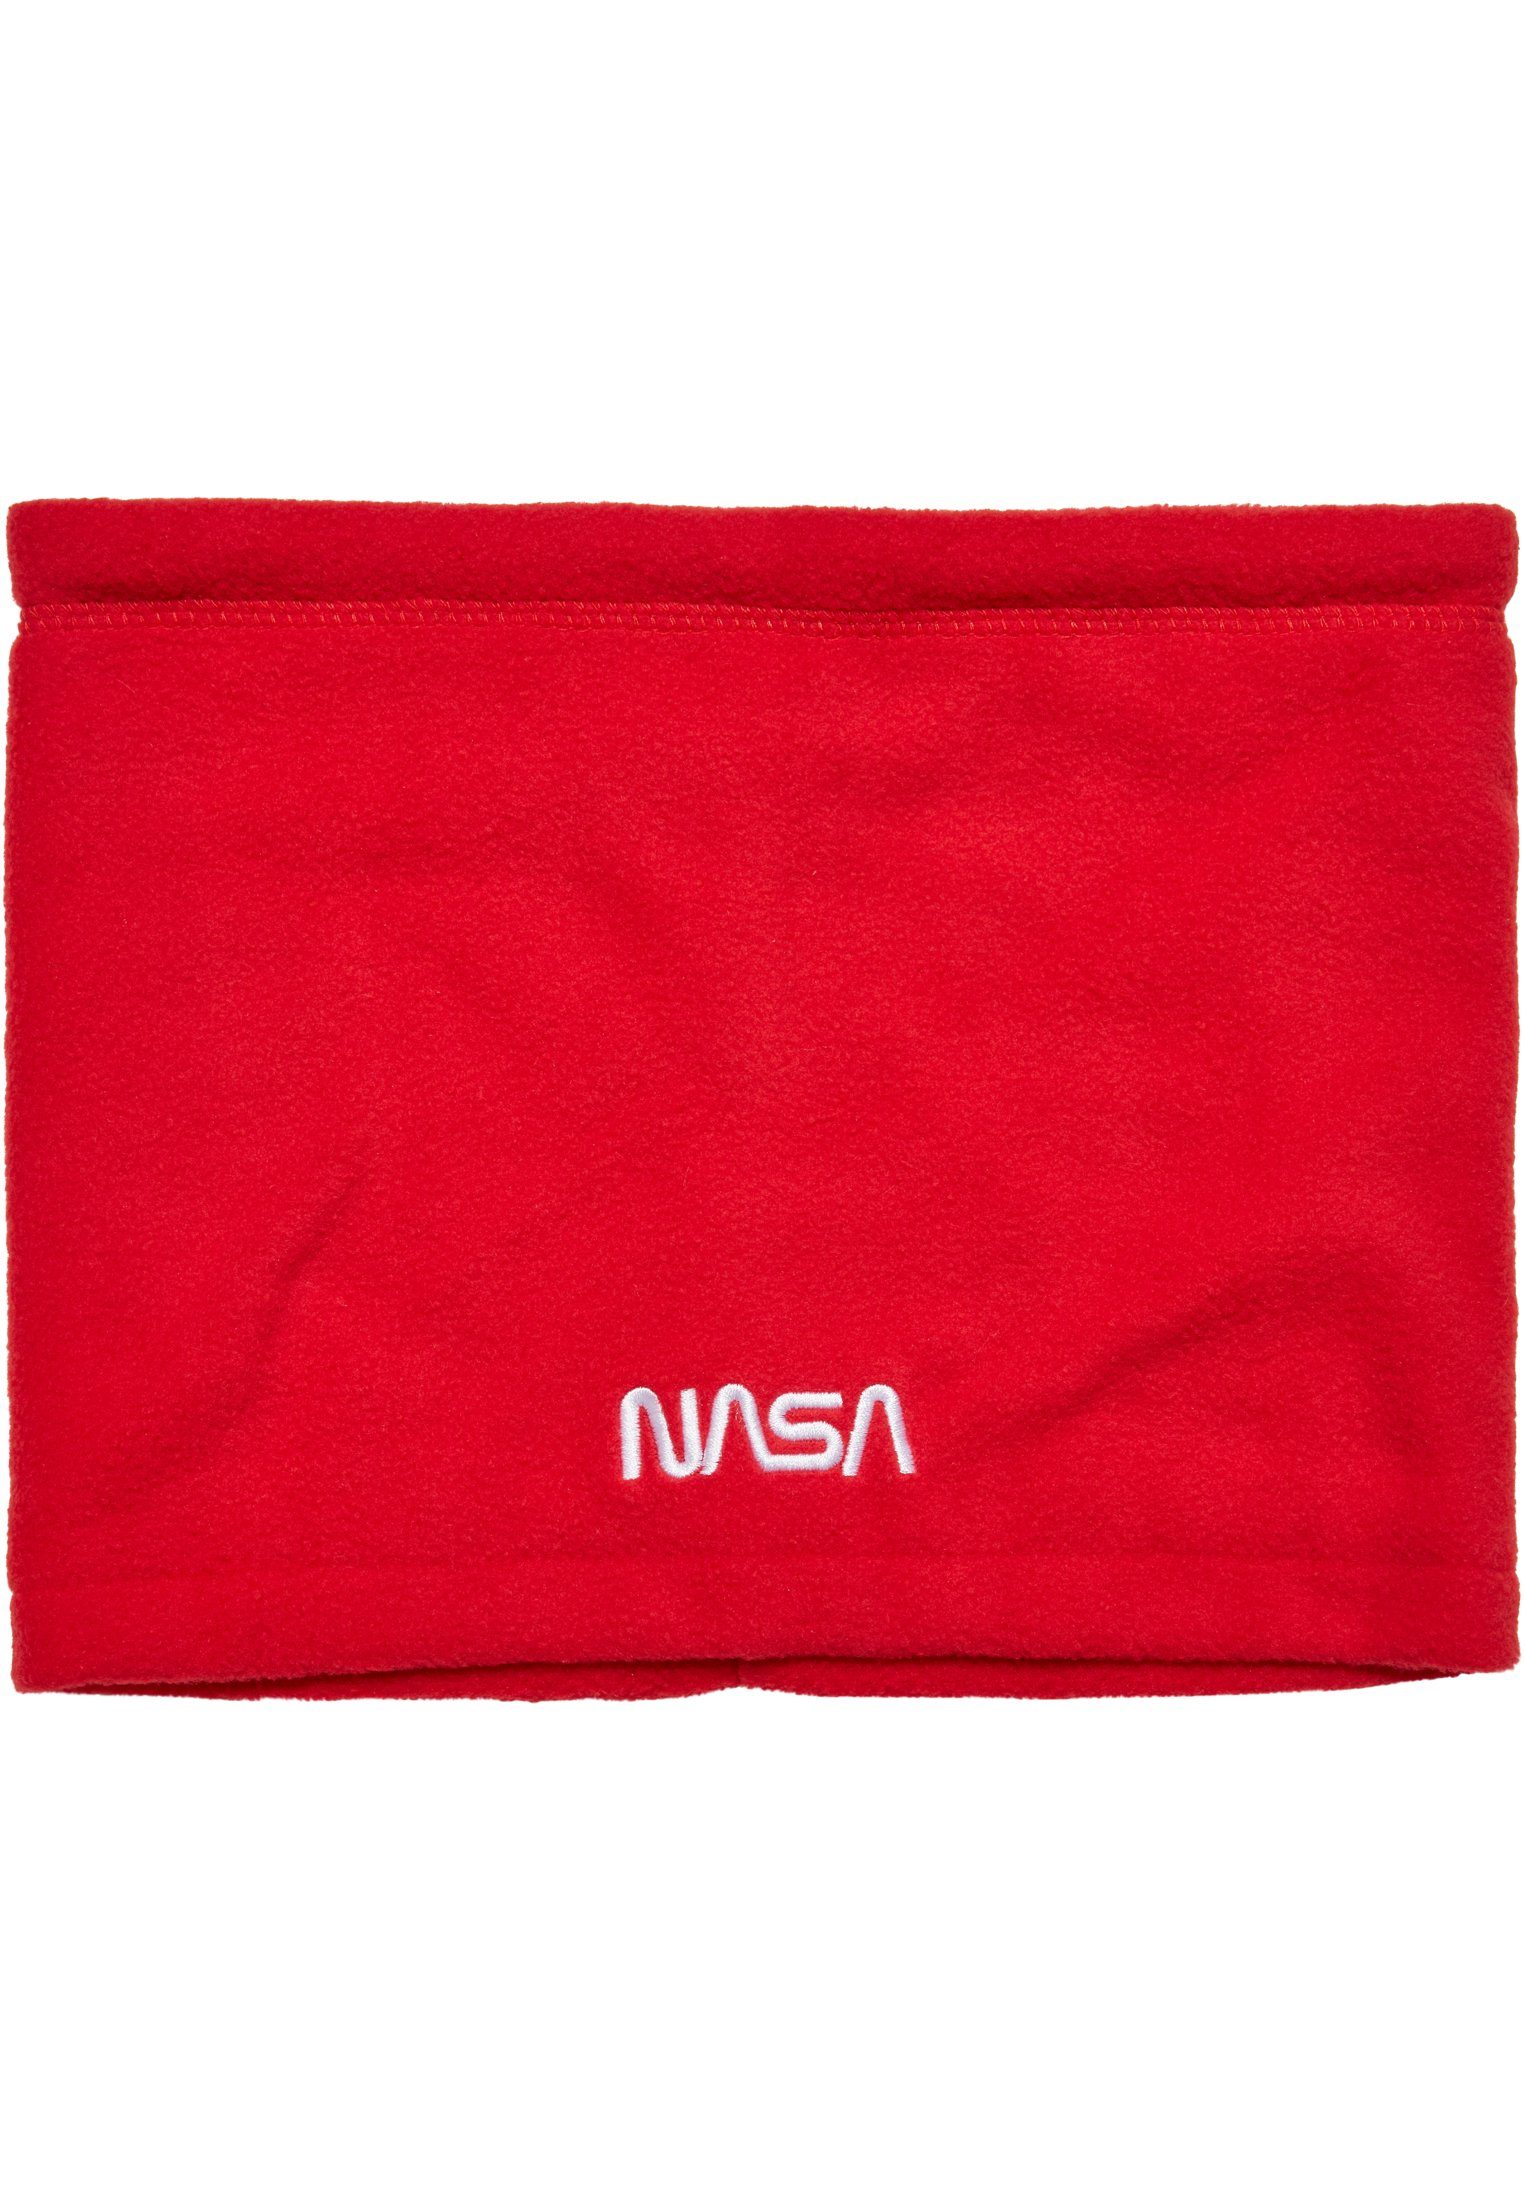 Accessoires MisterTee NASA red Mister Fleece Tee Set Baumwollhandschuhe